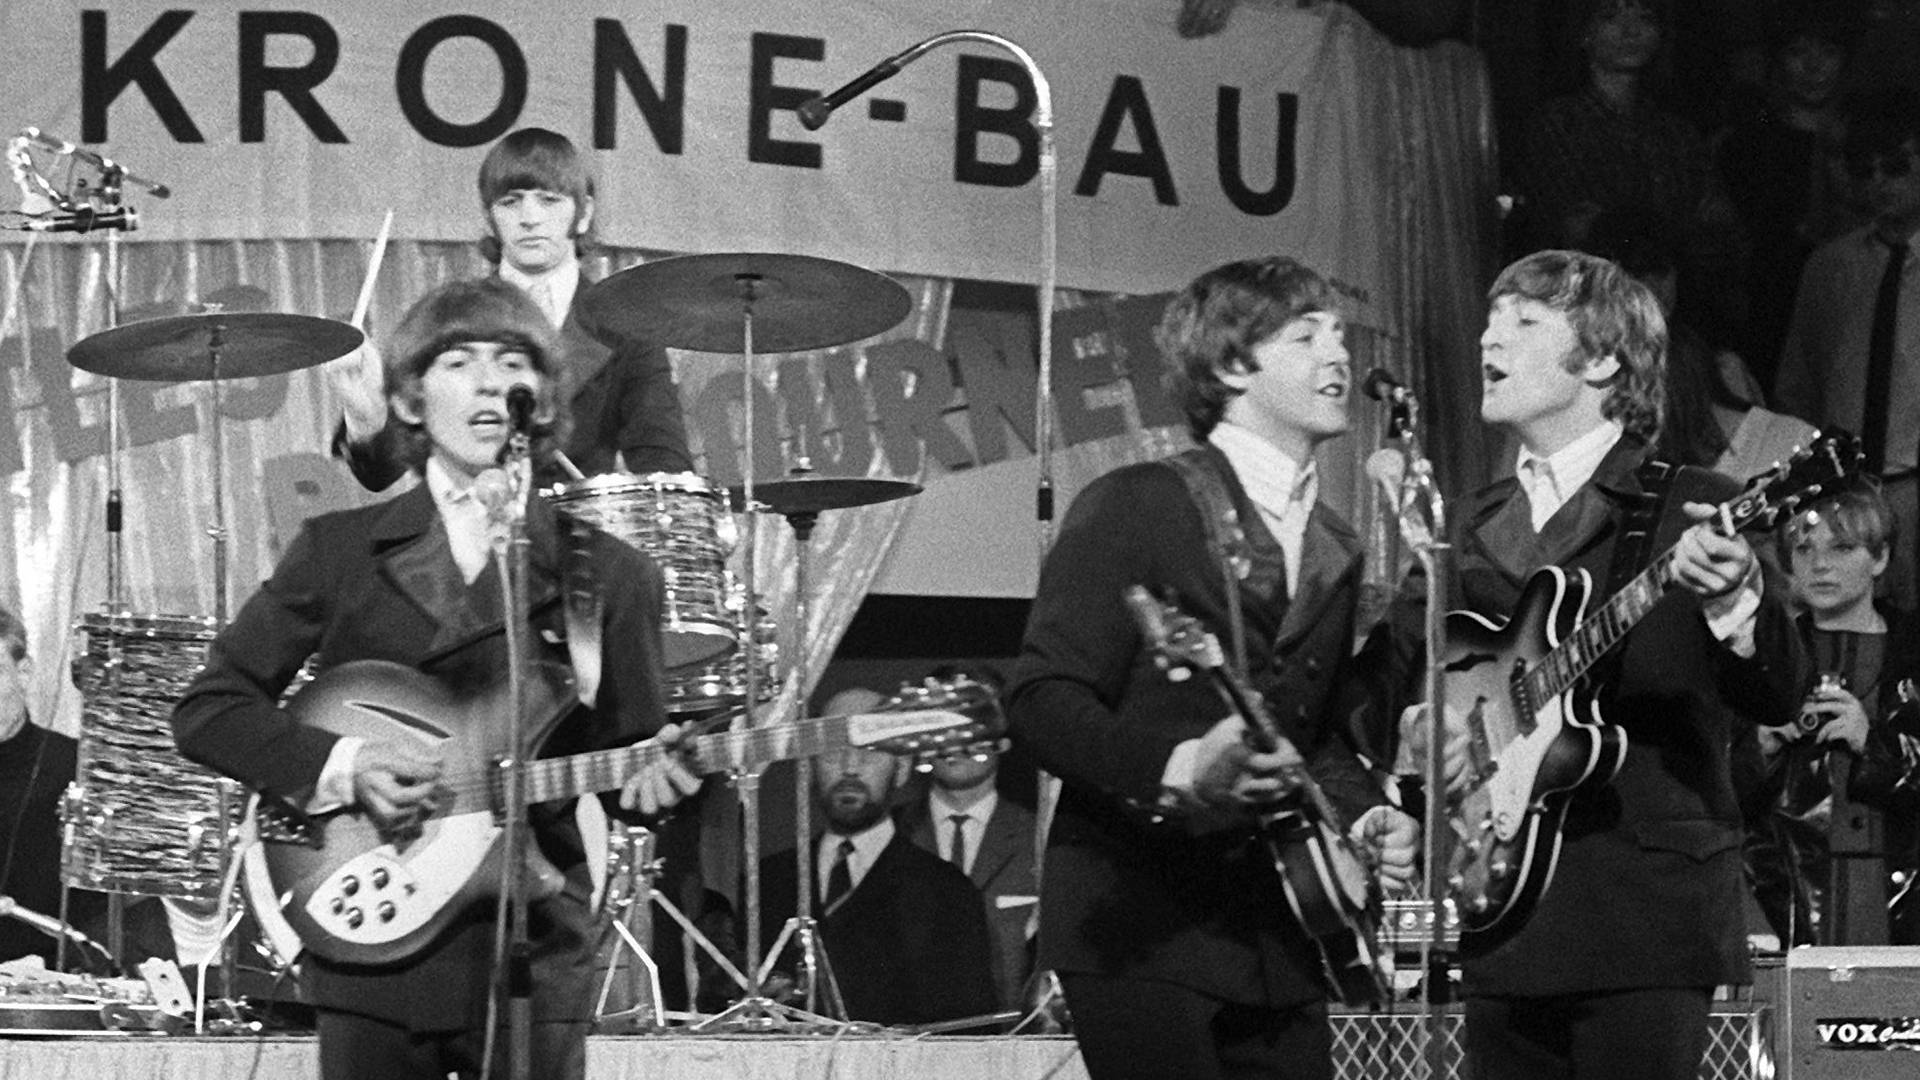 Die Beatles, (l-r) George Harrison, Paul McCartney, John Lennon und im Hintergrund am Schlagzeug Ringo Starr, treten Circus Krone-Bau auf. | dpa